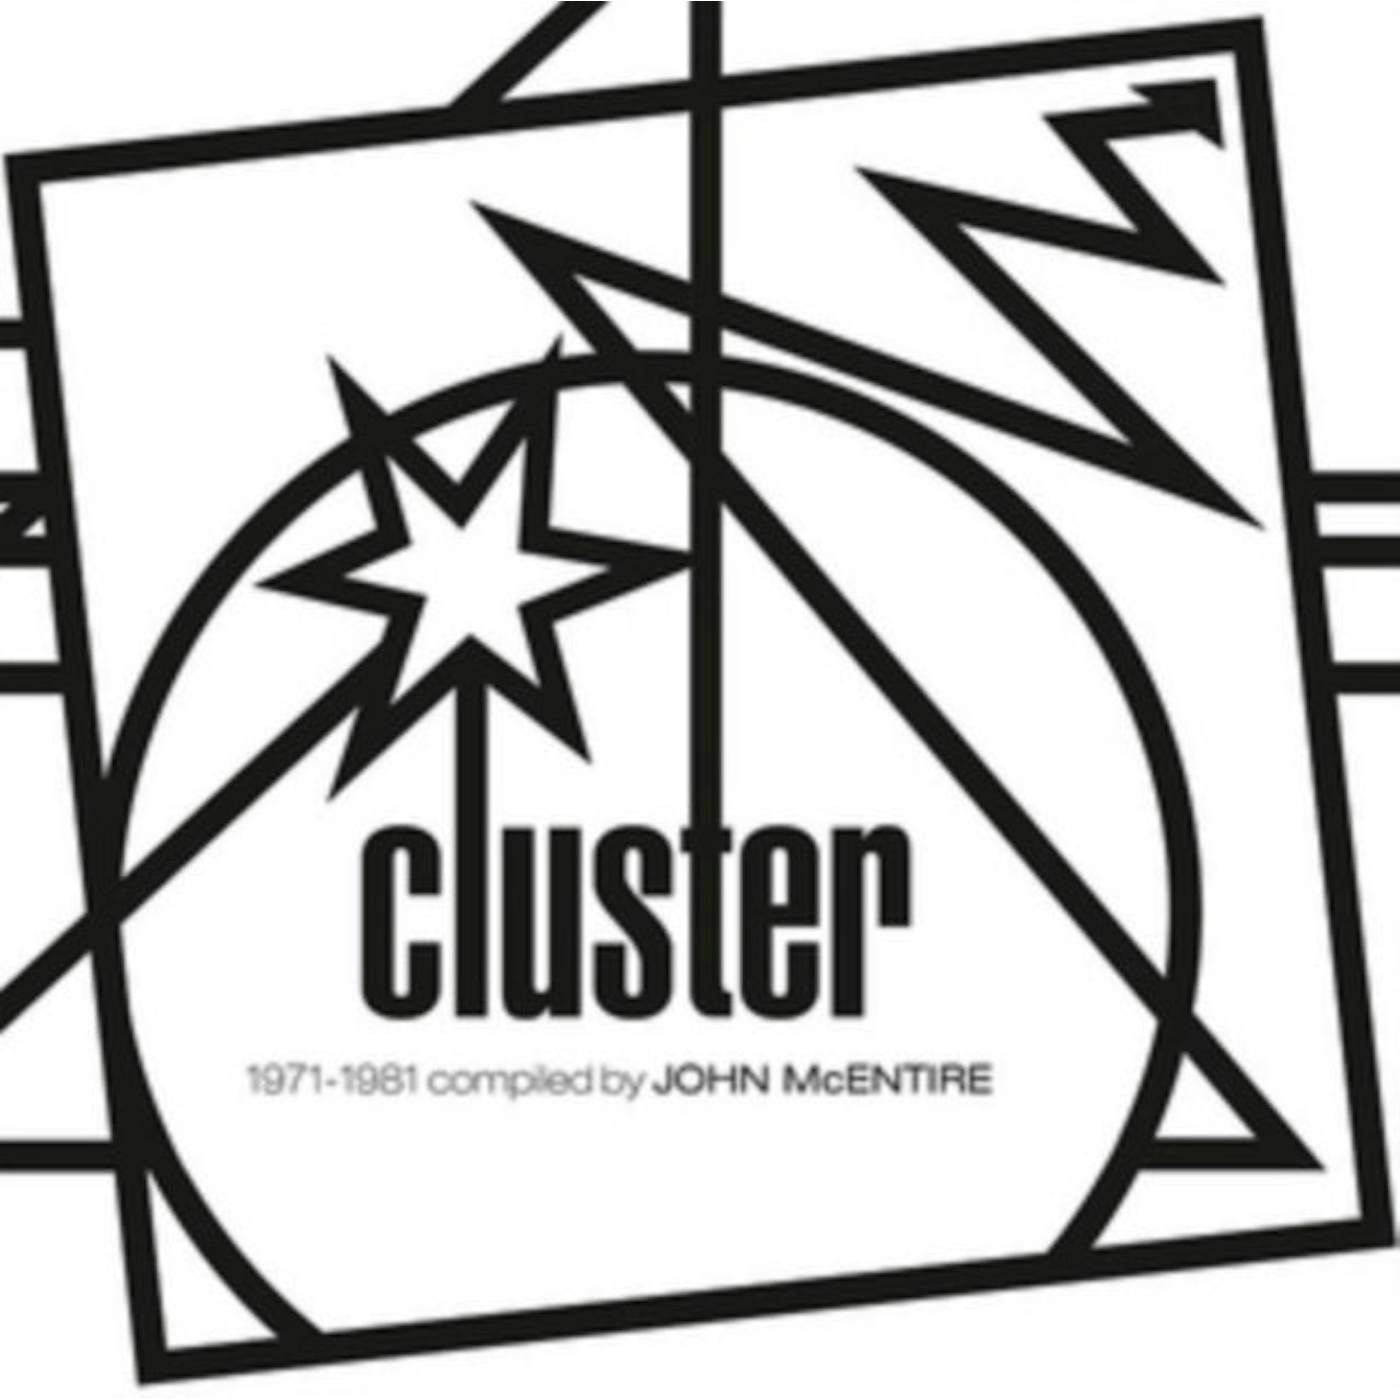 Cluster LP - Kollektion 06 1971-1981 Compi (Vinyl)